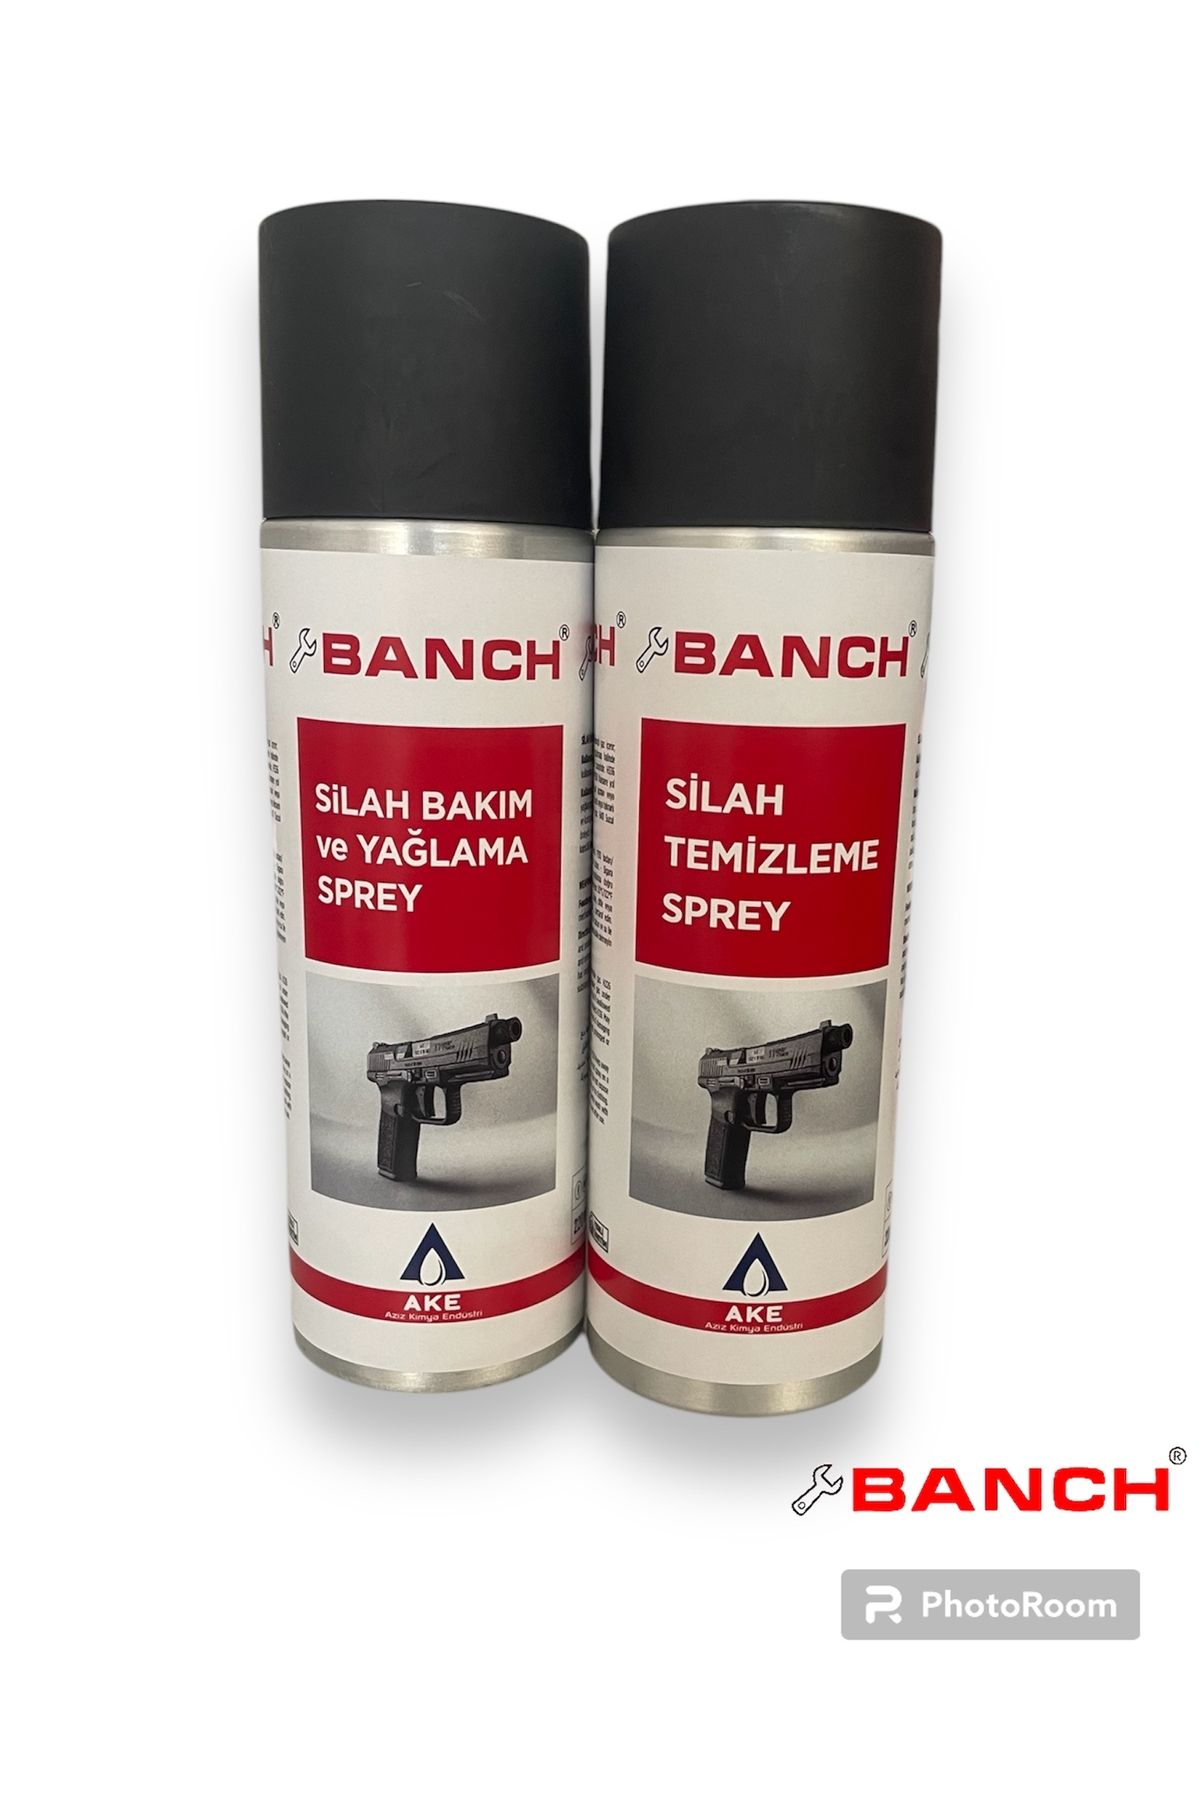 Banch Silah Temizleme Spreyi + Silah Bakım Ve Yağlama Spreyi 2'li Set (220 Ml*2)